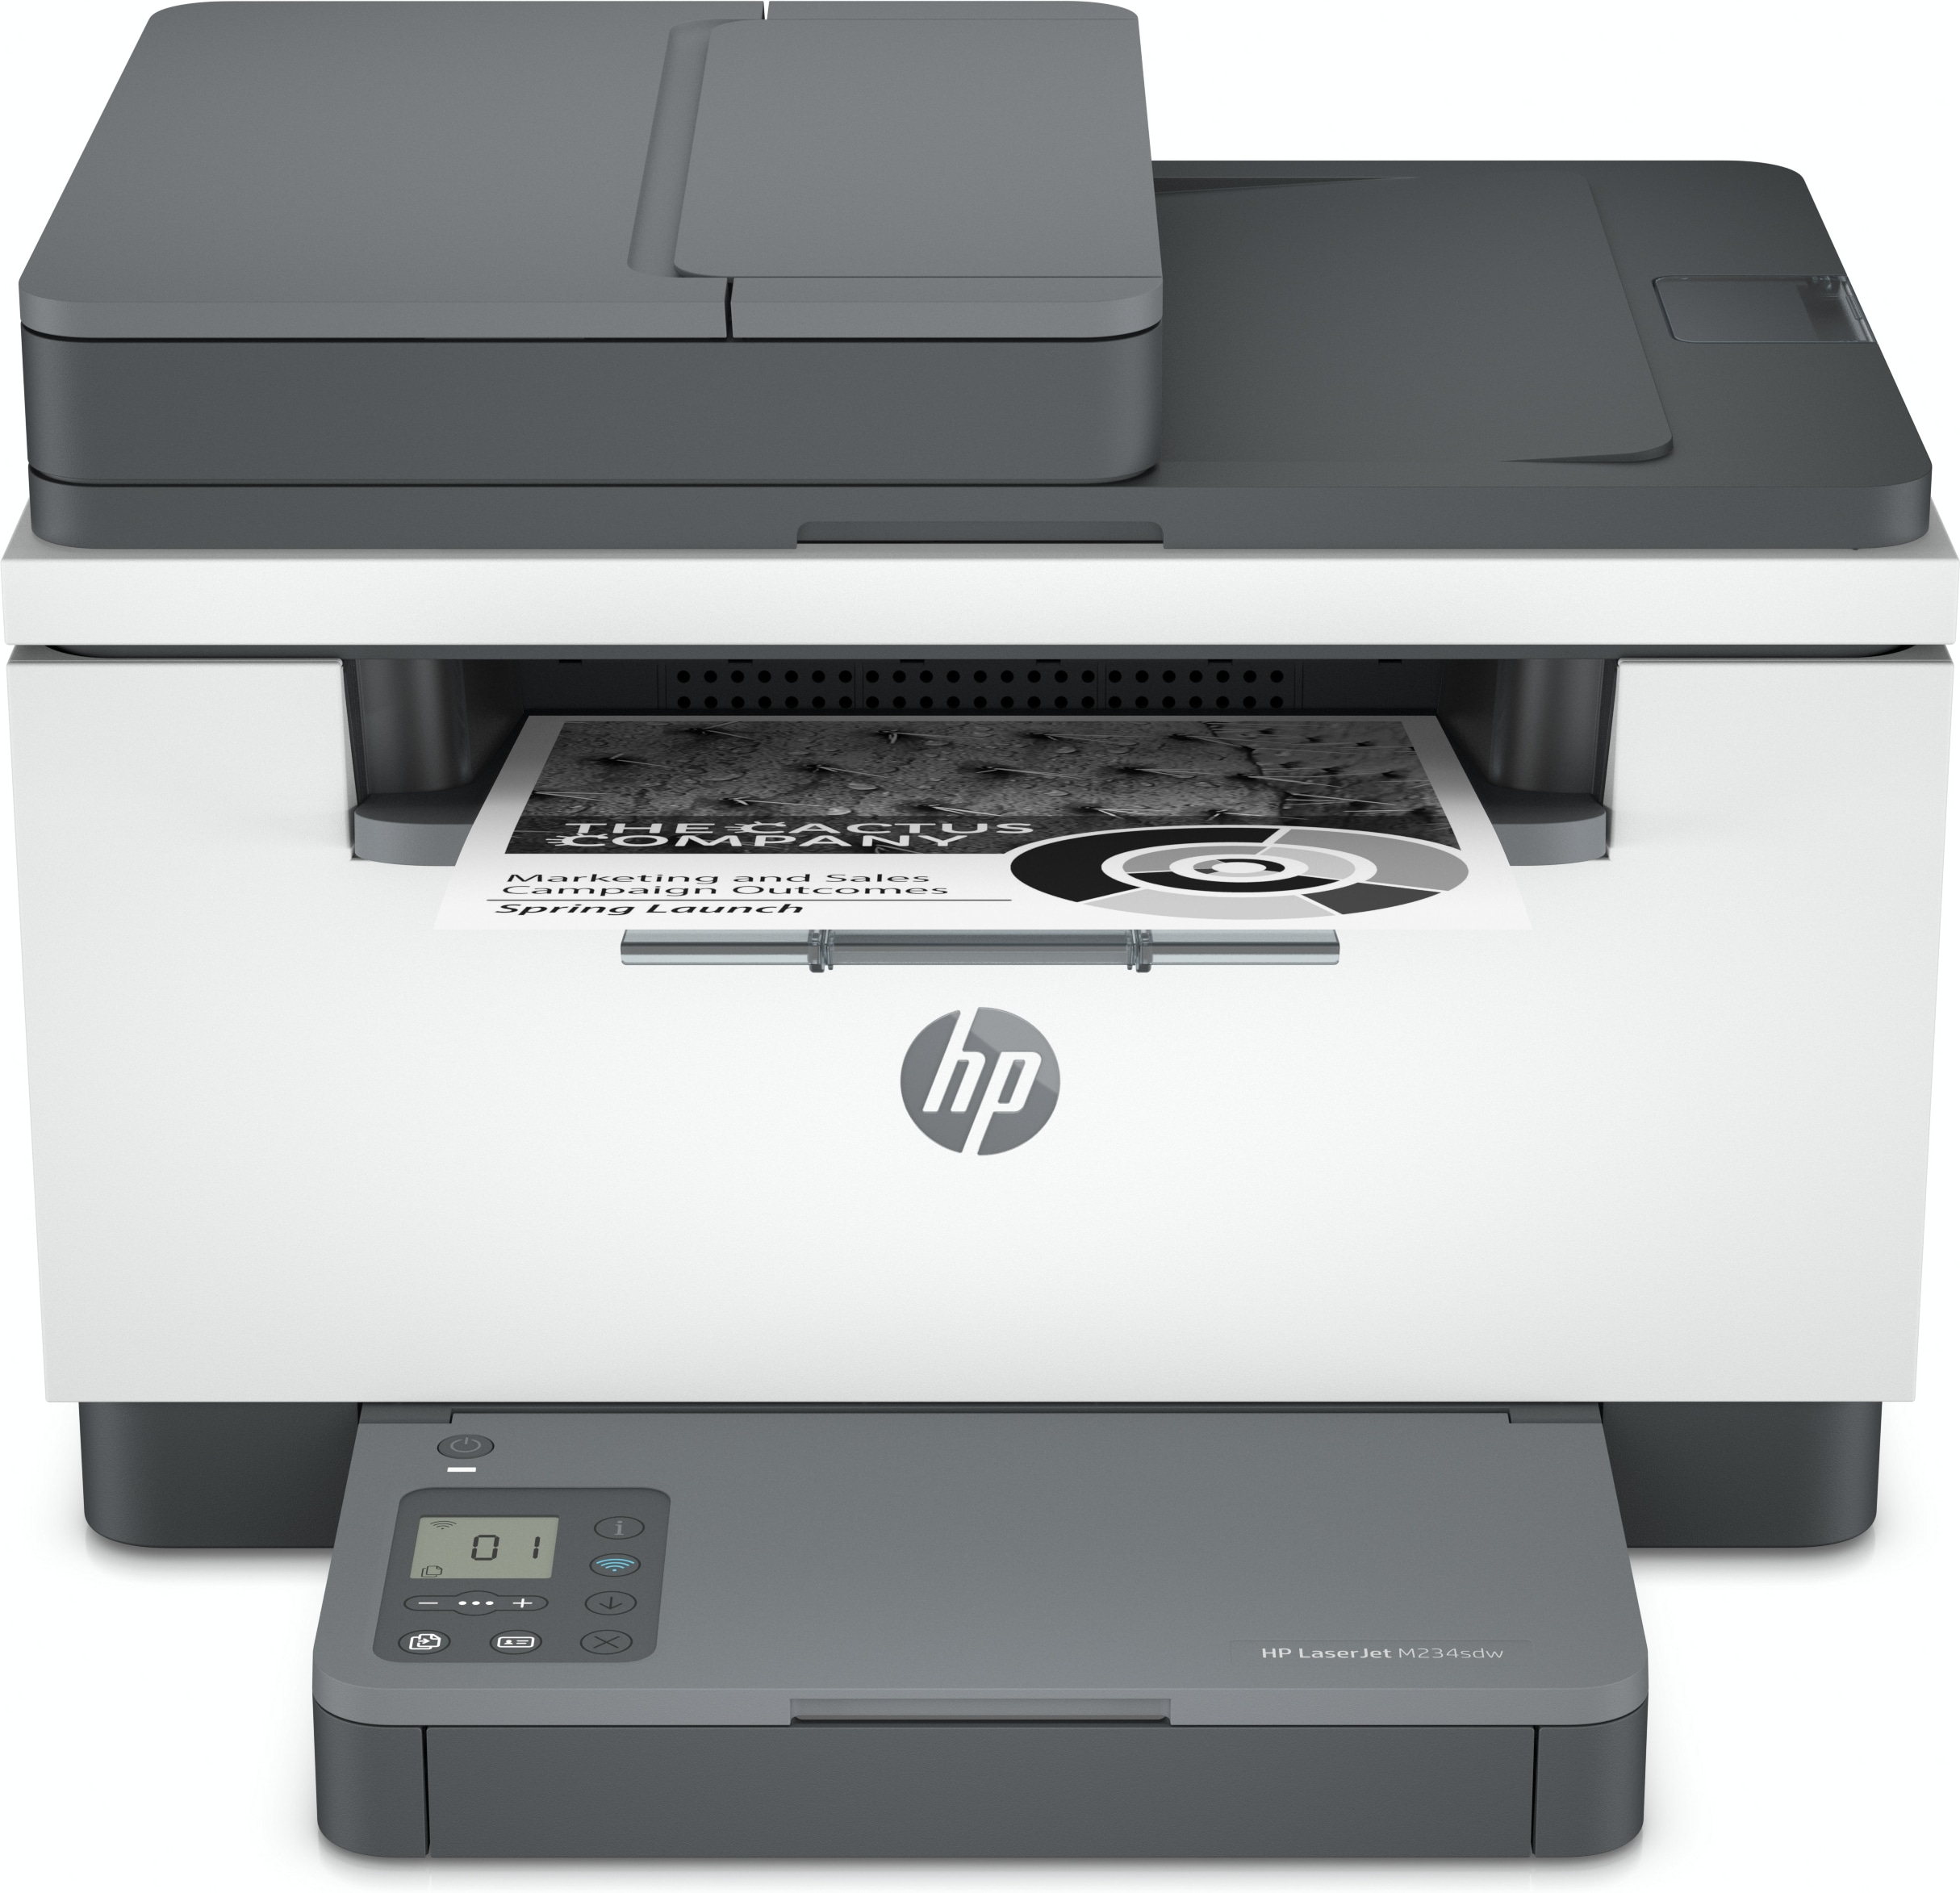 regen rotatie filosoof HP HP LaserJet MFP M234sdw printer, Zwart-wit, Printer voor Kleine  kantoren, Printen, kopiëren, scannen, Scannen naar e-mail; Scannen naar  pdf; Compact formaat; Energiezuinig; Snel dubbelzijdig printen; ADF voor 40  vellen; Dual-band Wi-Fi (